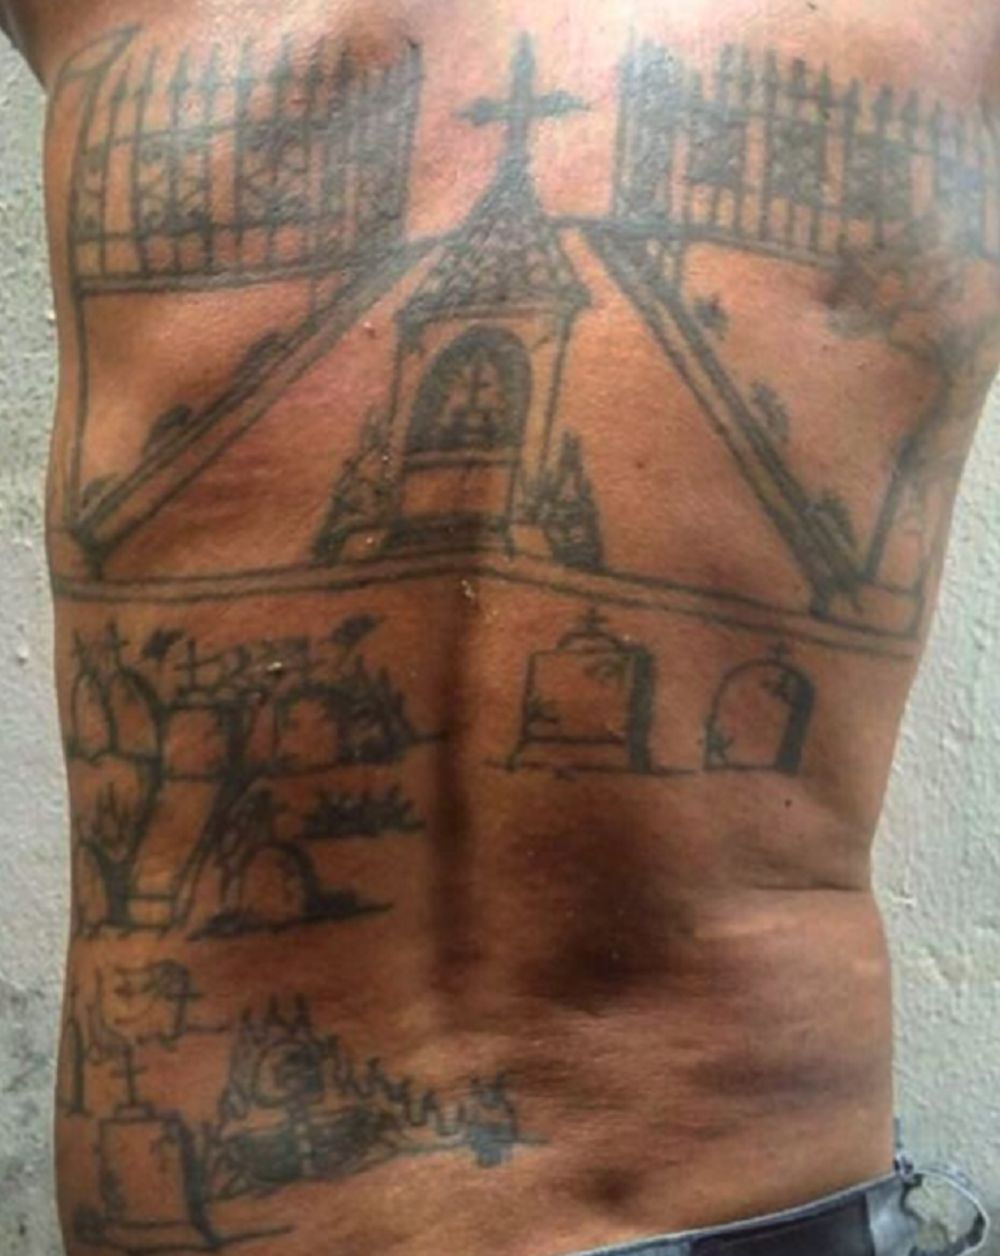 Marcelo Reis tatuou nas costas um cemitério com túmulos representando as vítimas assassinadas (Foto: Reprodução/Polícia Civil)